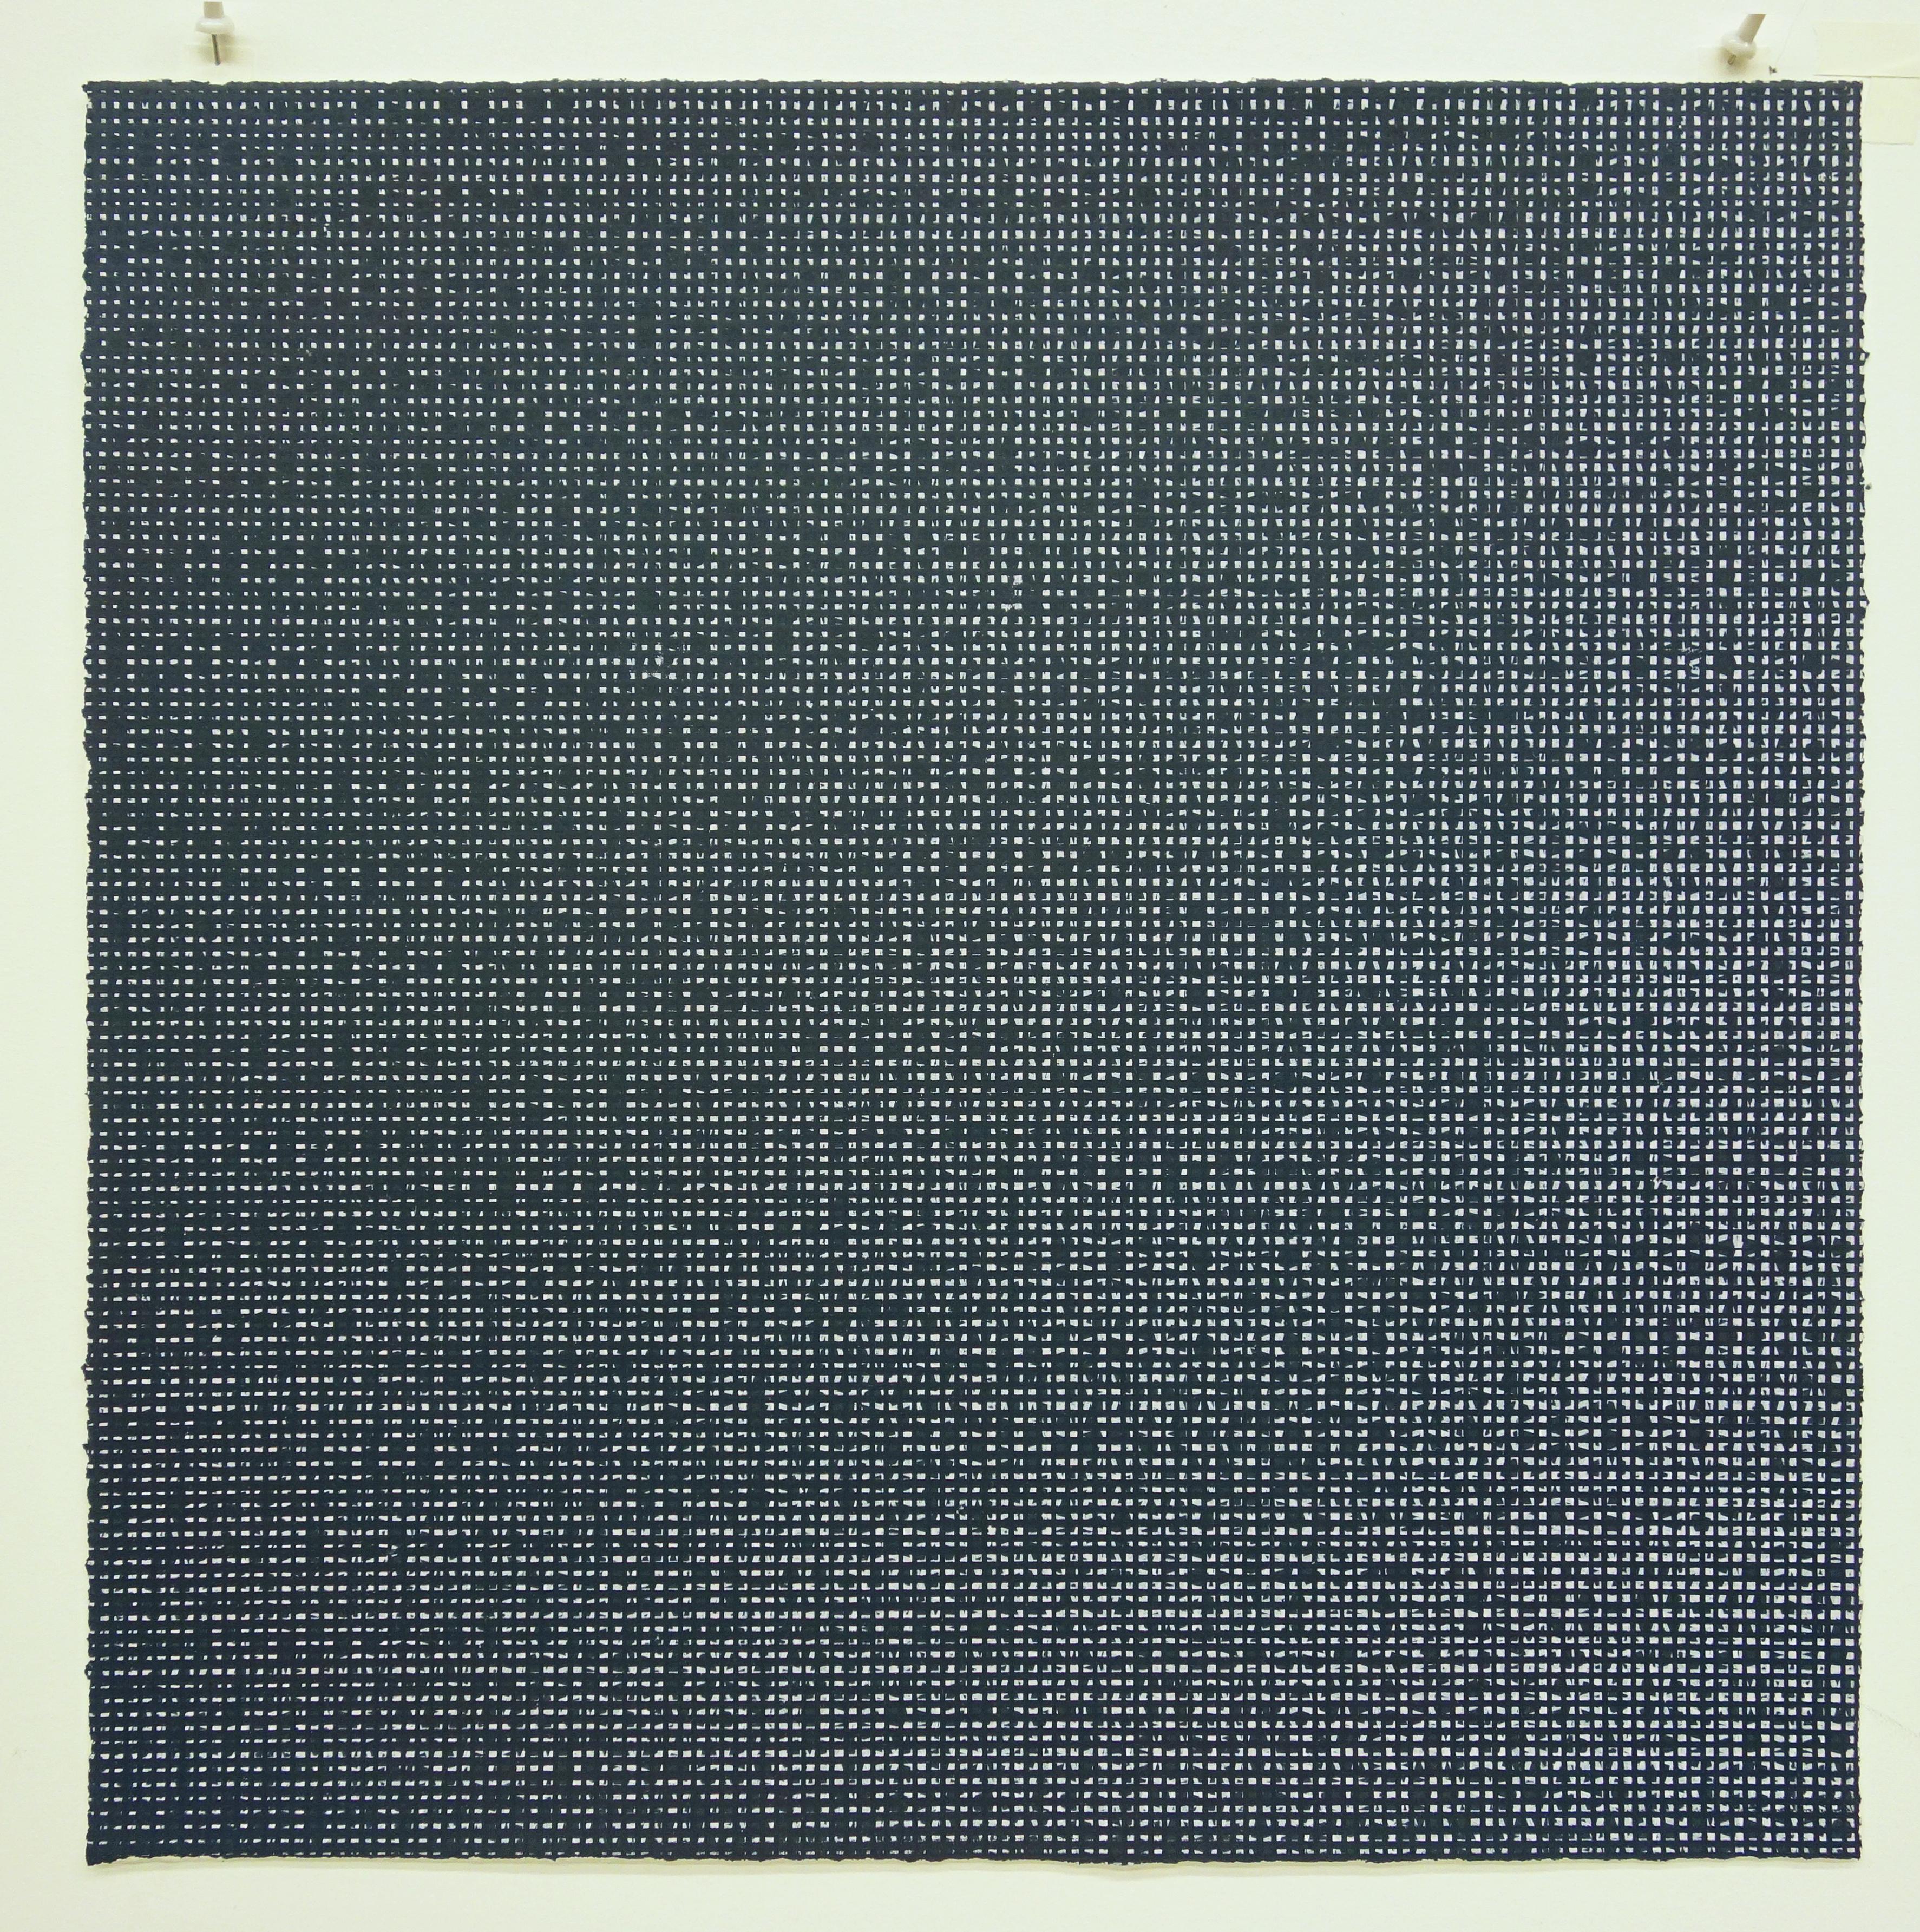 Rob de Oude, Untitled-Wassaic 6, 2016, silkscreen, 18 x 18, Minimalist 2